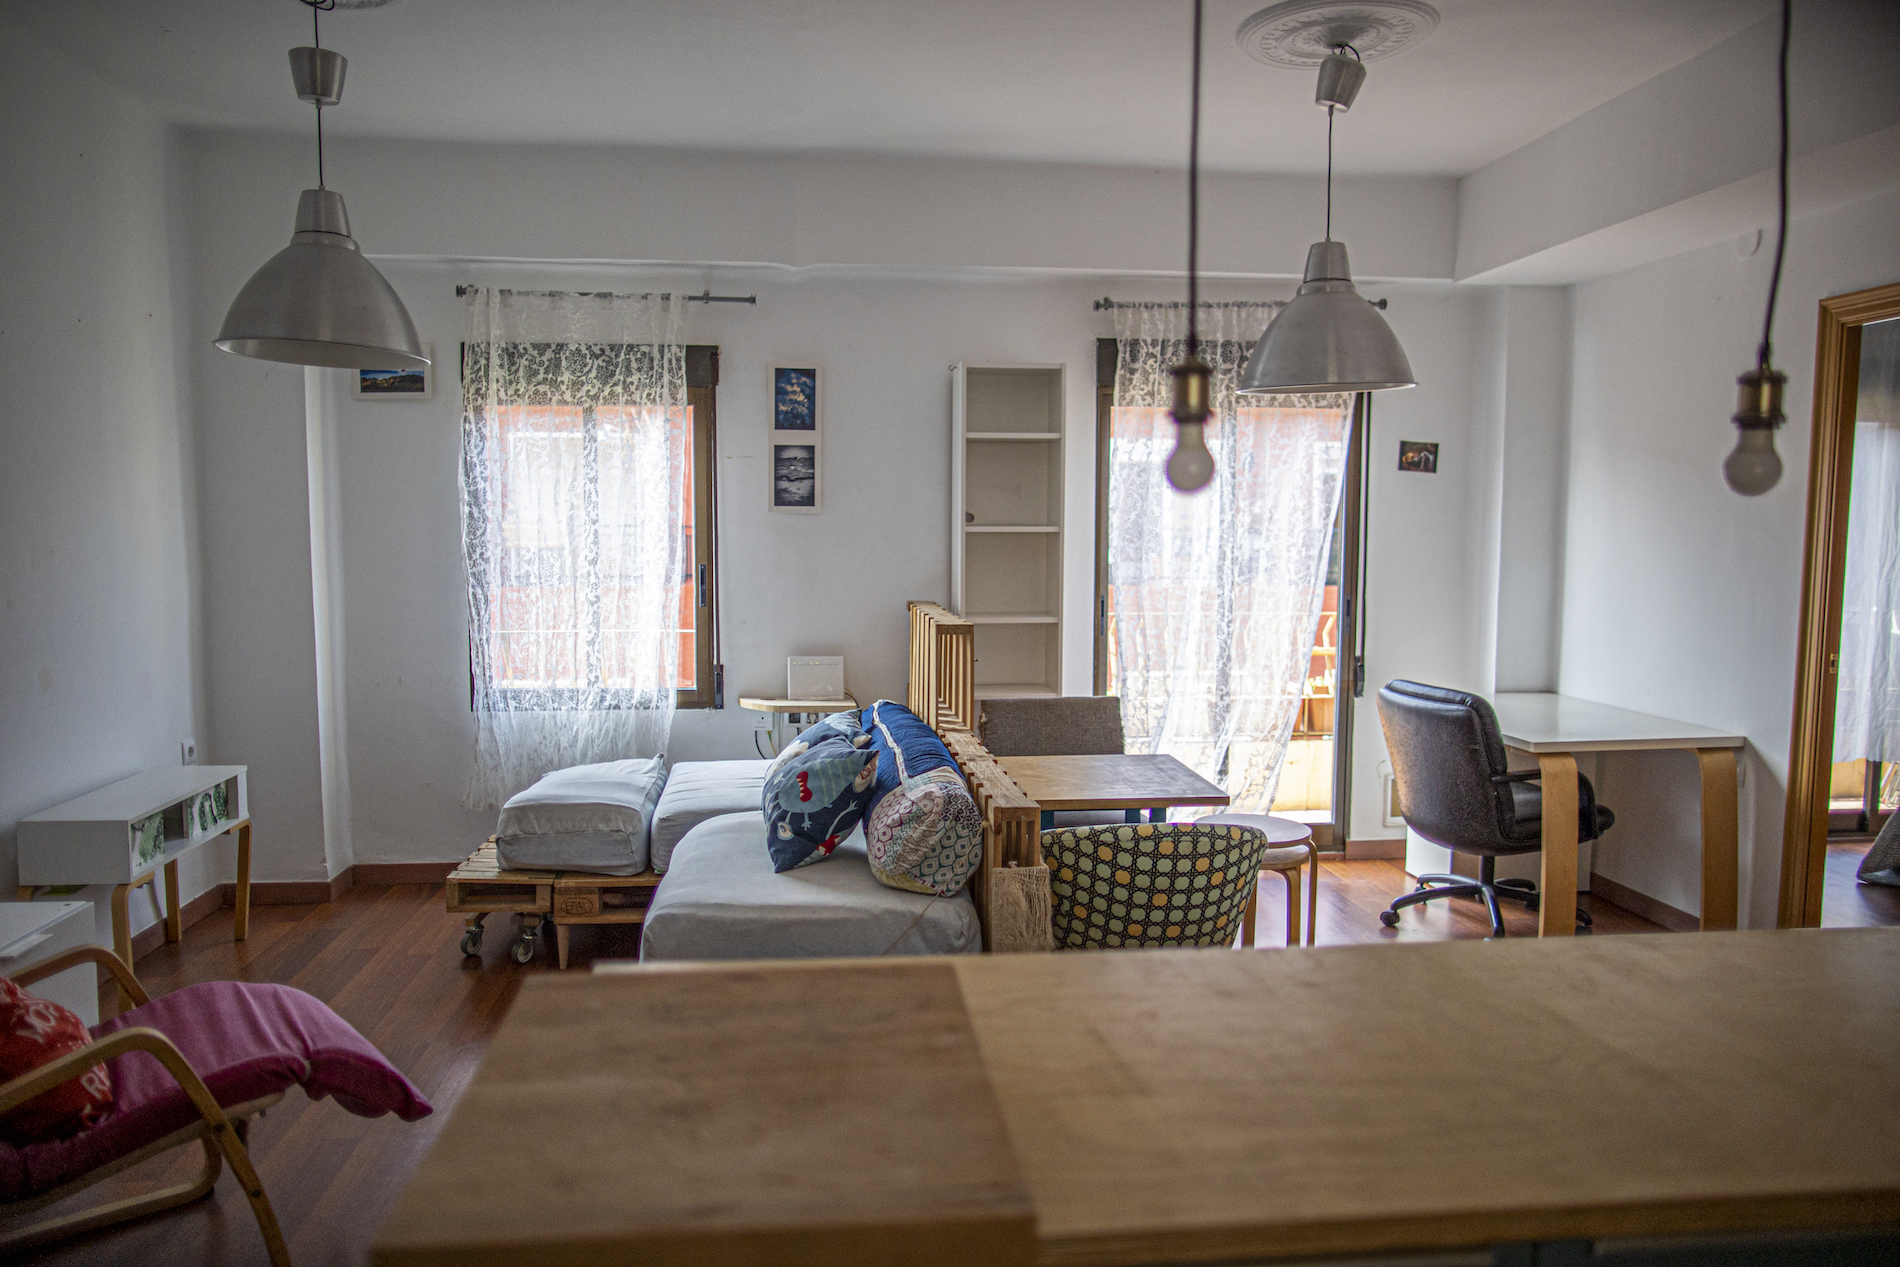 apartment-for-rent-in-mislata-livingroom